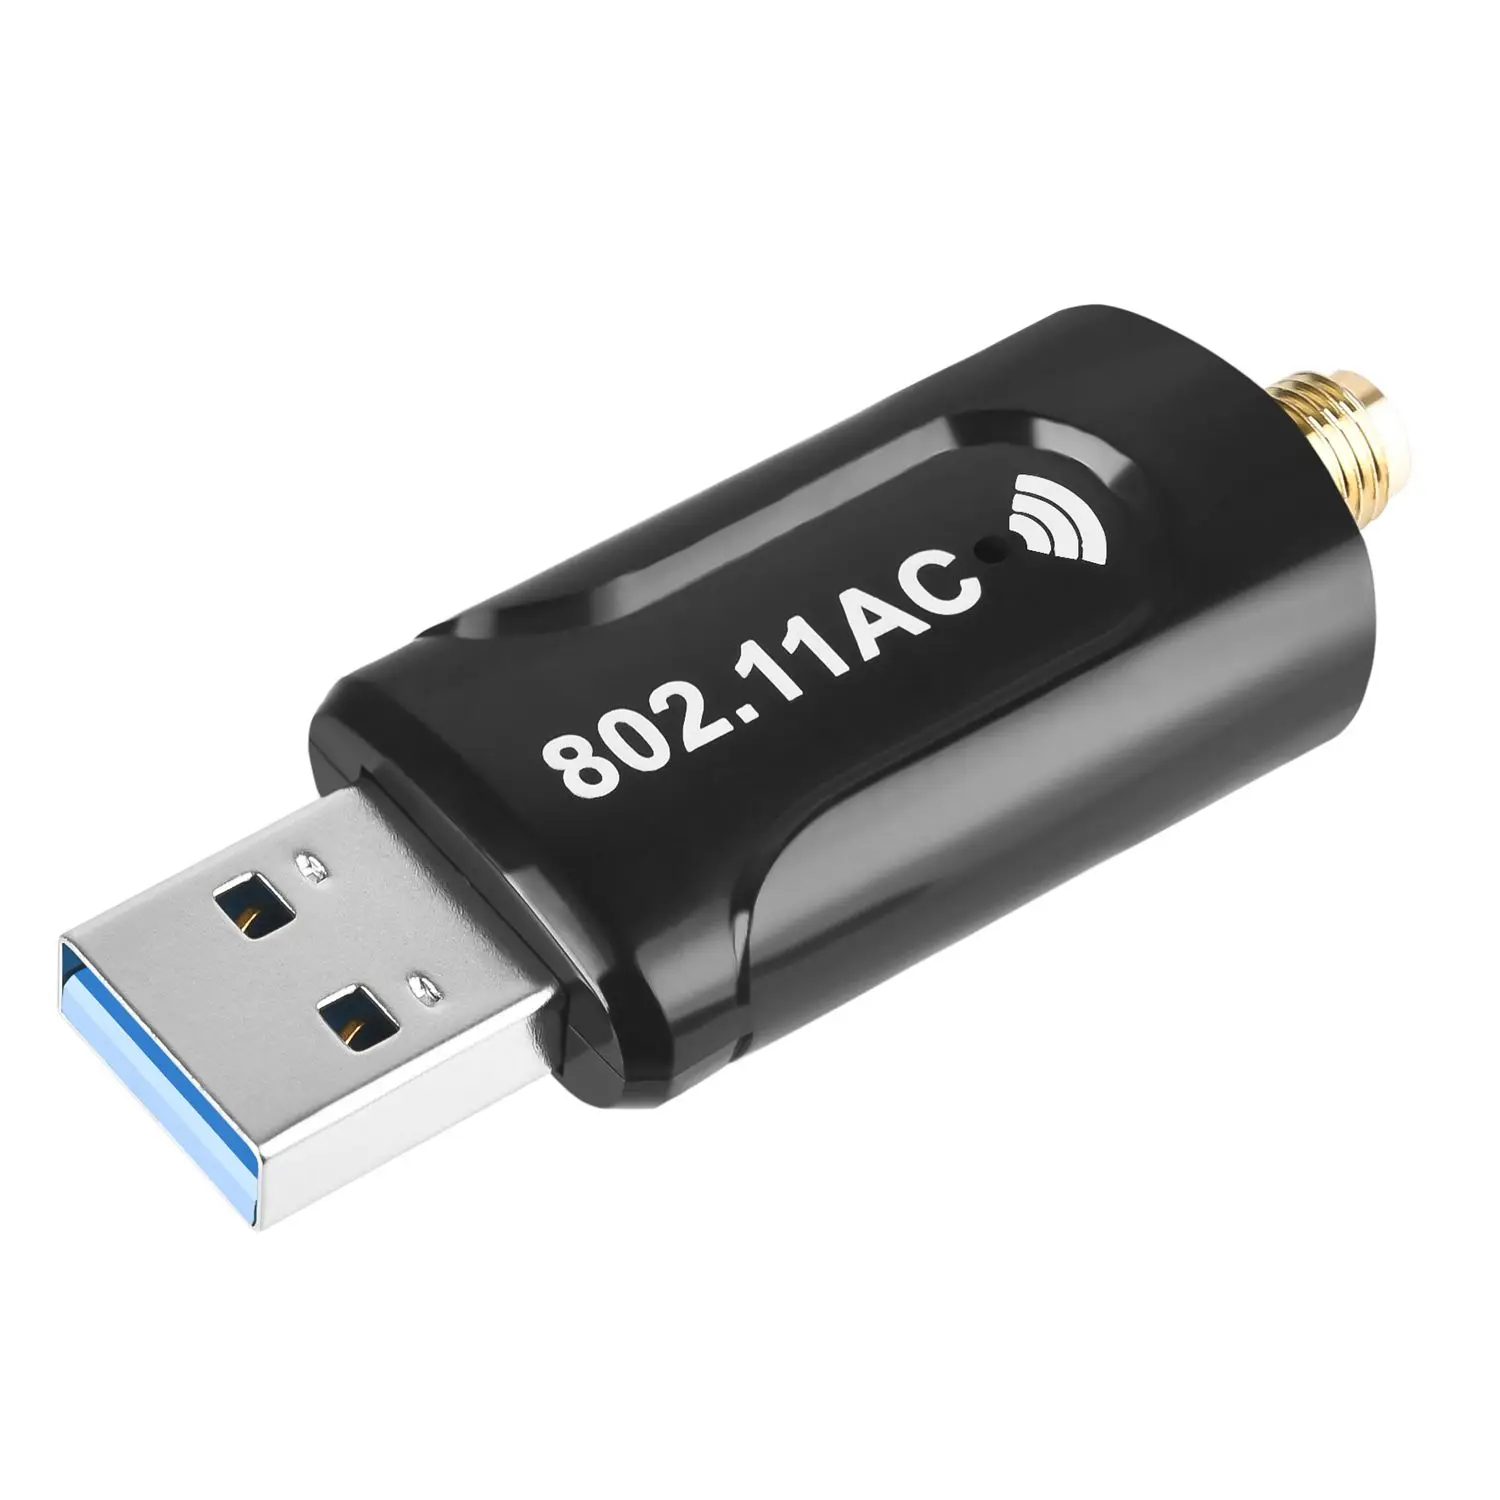 USB WiFi Dongle адаптер 1200 Мбит/с Беспроводная сеть для ноутбука Настольный ПК антенна